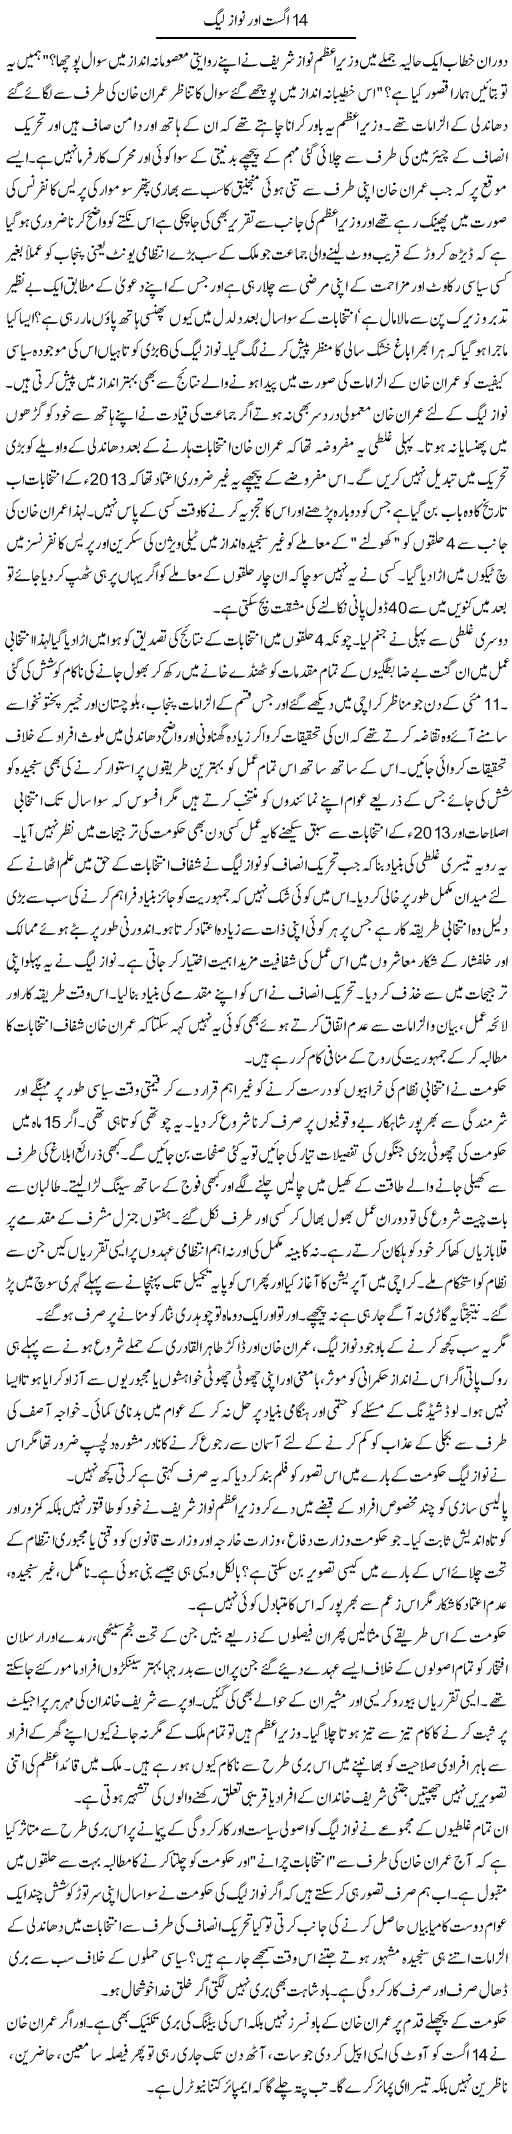 14 August Our Nawaz League | Talat Hussain | Daily Urdu Columns